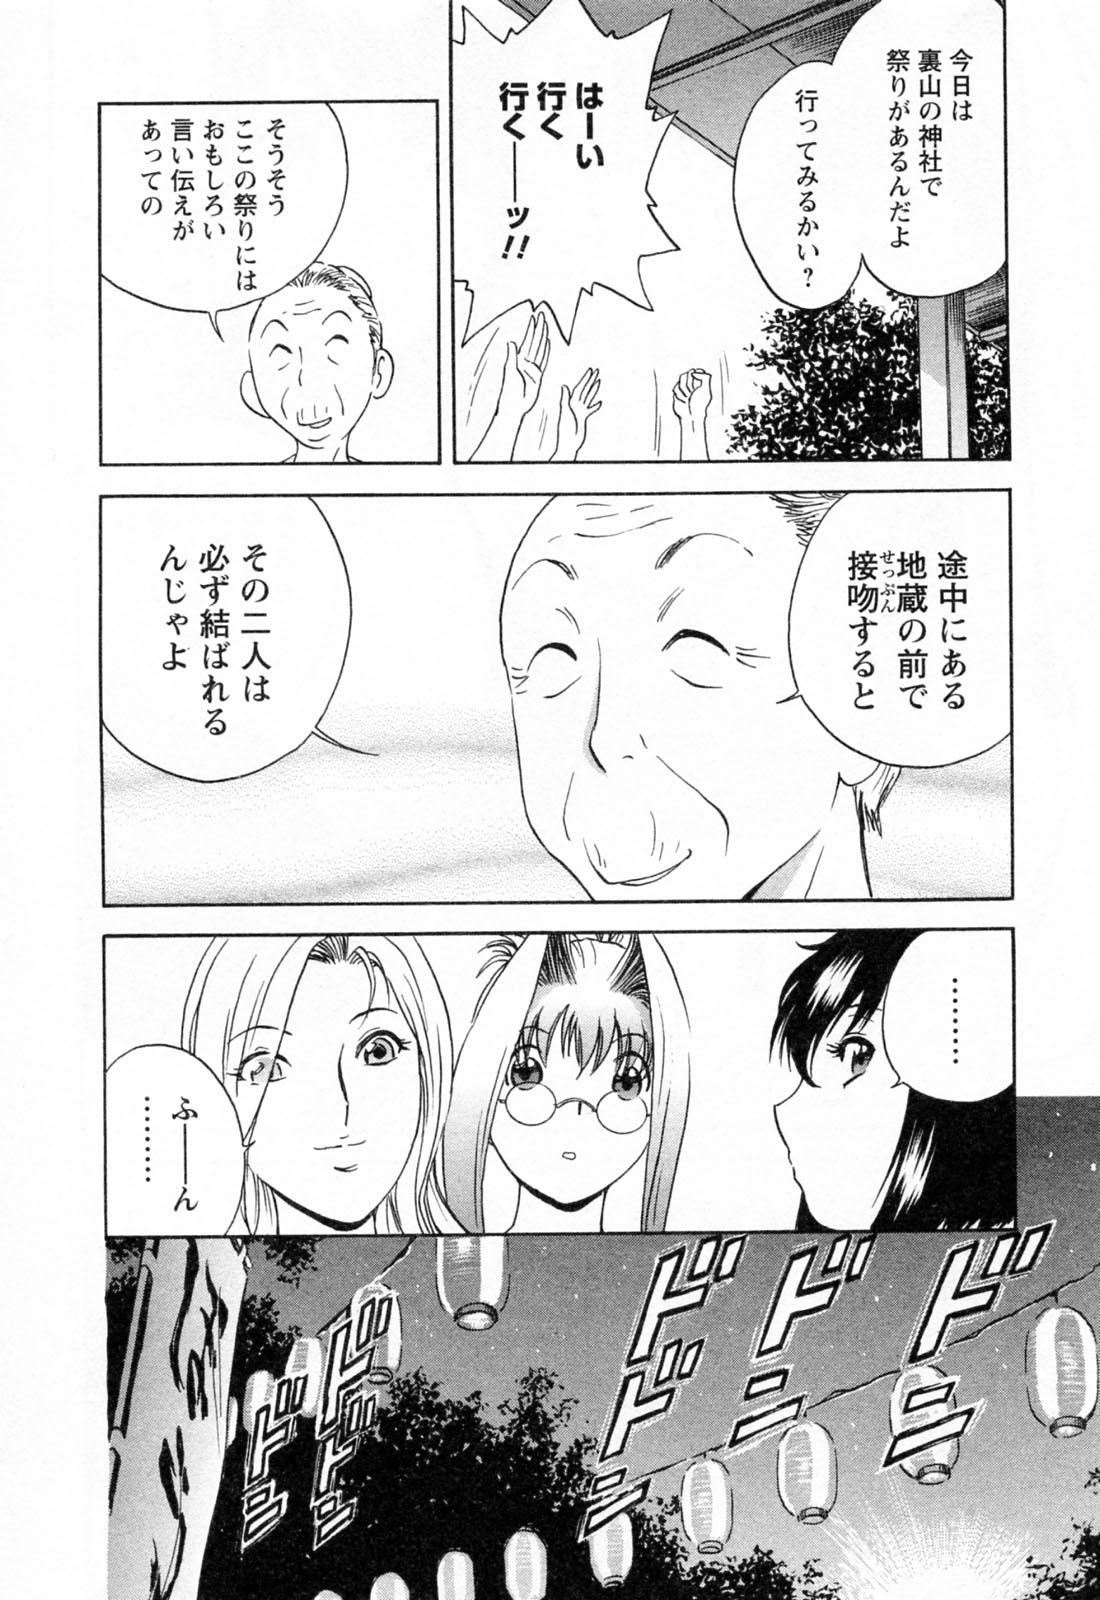 [Hidemaru] Mo-Retsu! Boin Sensei (Boing Boing Teacher) Vol.4 121